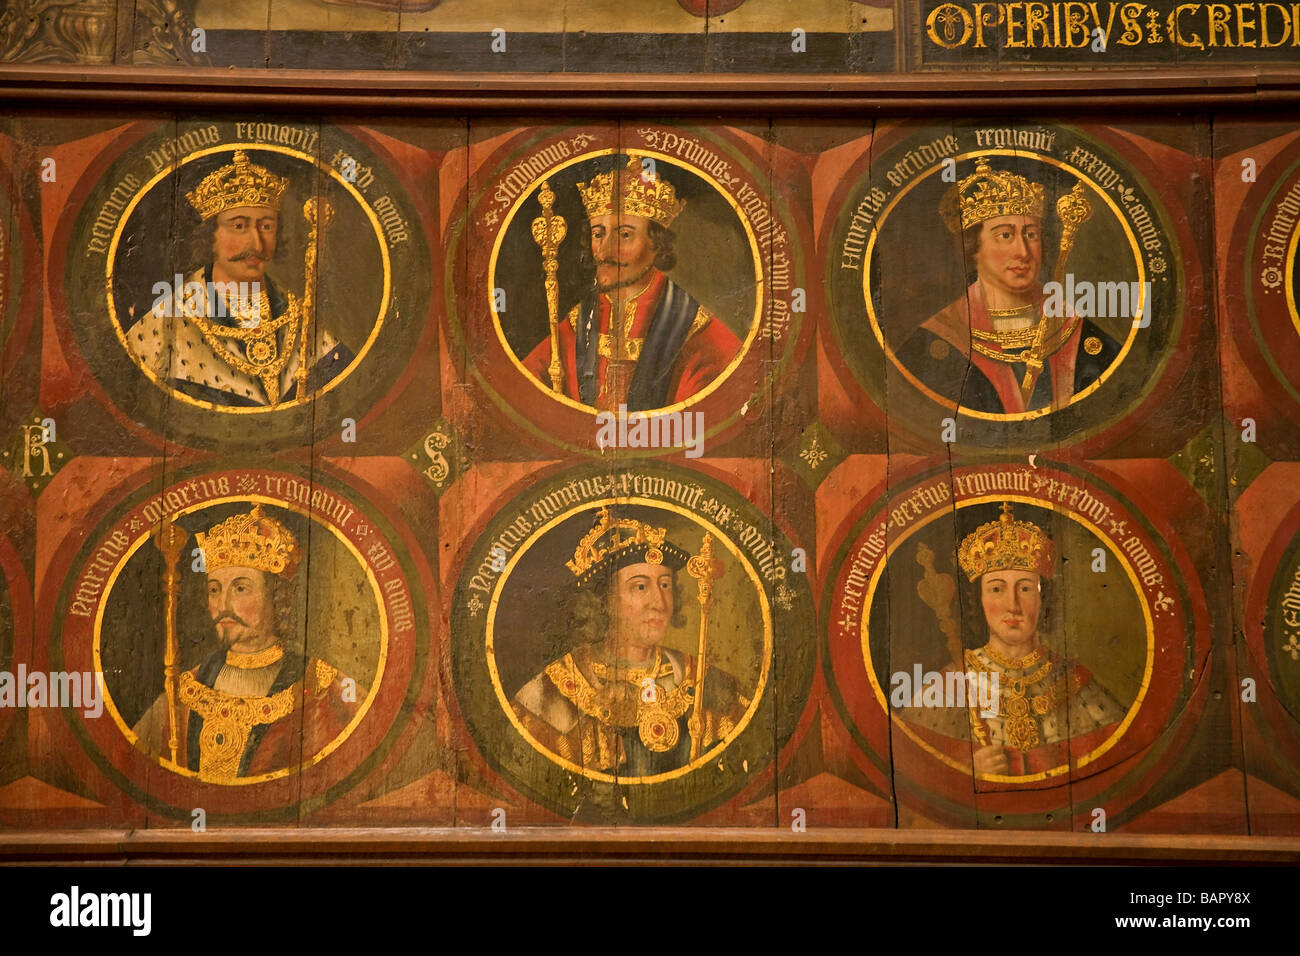 Serie von Porträts der englischen Könige auf Holztafeln gemalt von Lambert Barnard. Südlichen Querschiff der Kathedrale von Chichester, Sussex, UK Stockfoto